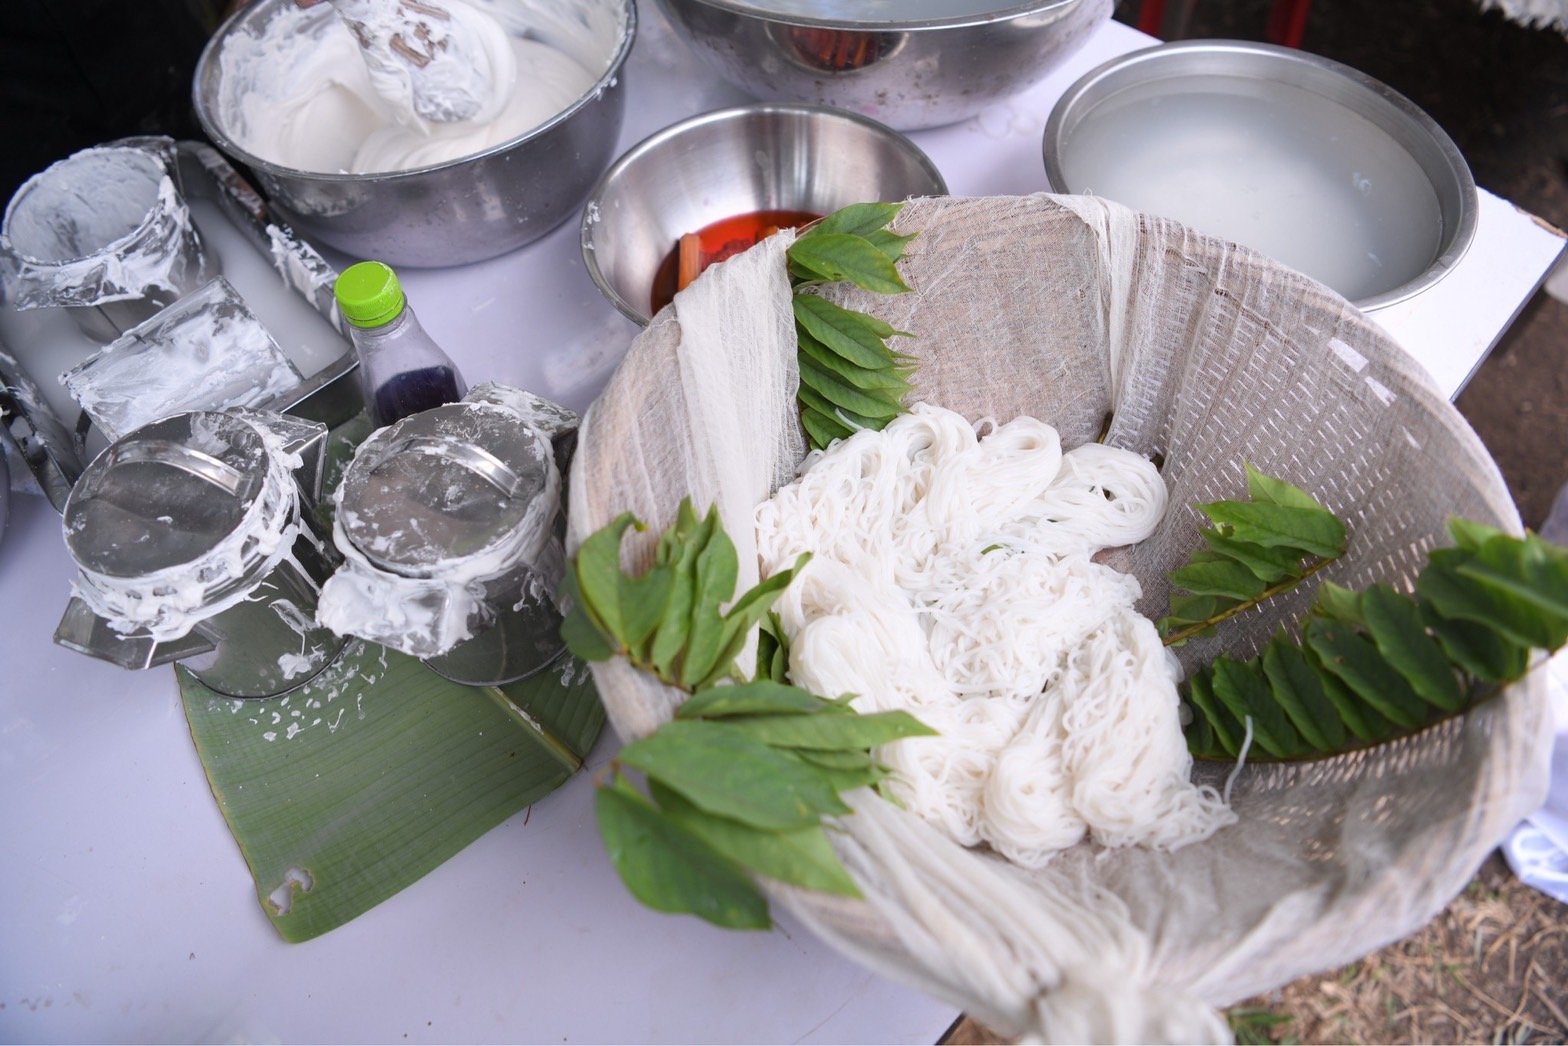 เปิดเทศกาลข้าวใหม่ ประจำปี 2565 ชวนคนไทยระลึกถึงความสำคัญของ “ชาวนา-ข้าวอินทรีย์”  thaihealth